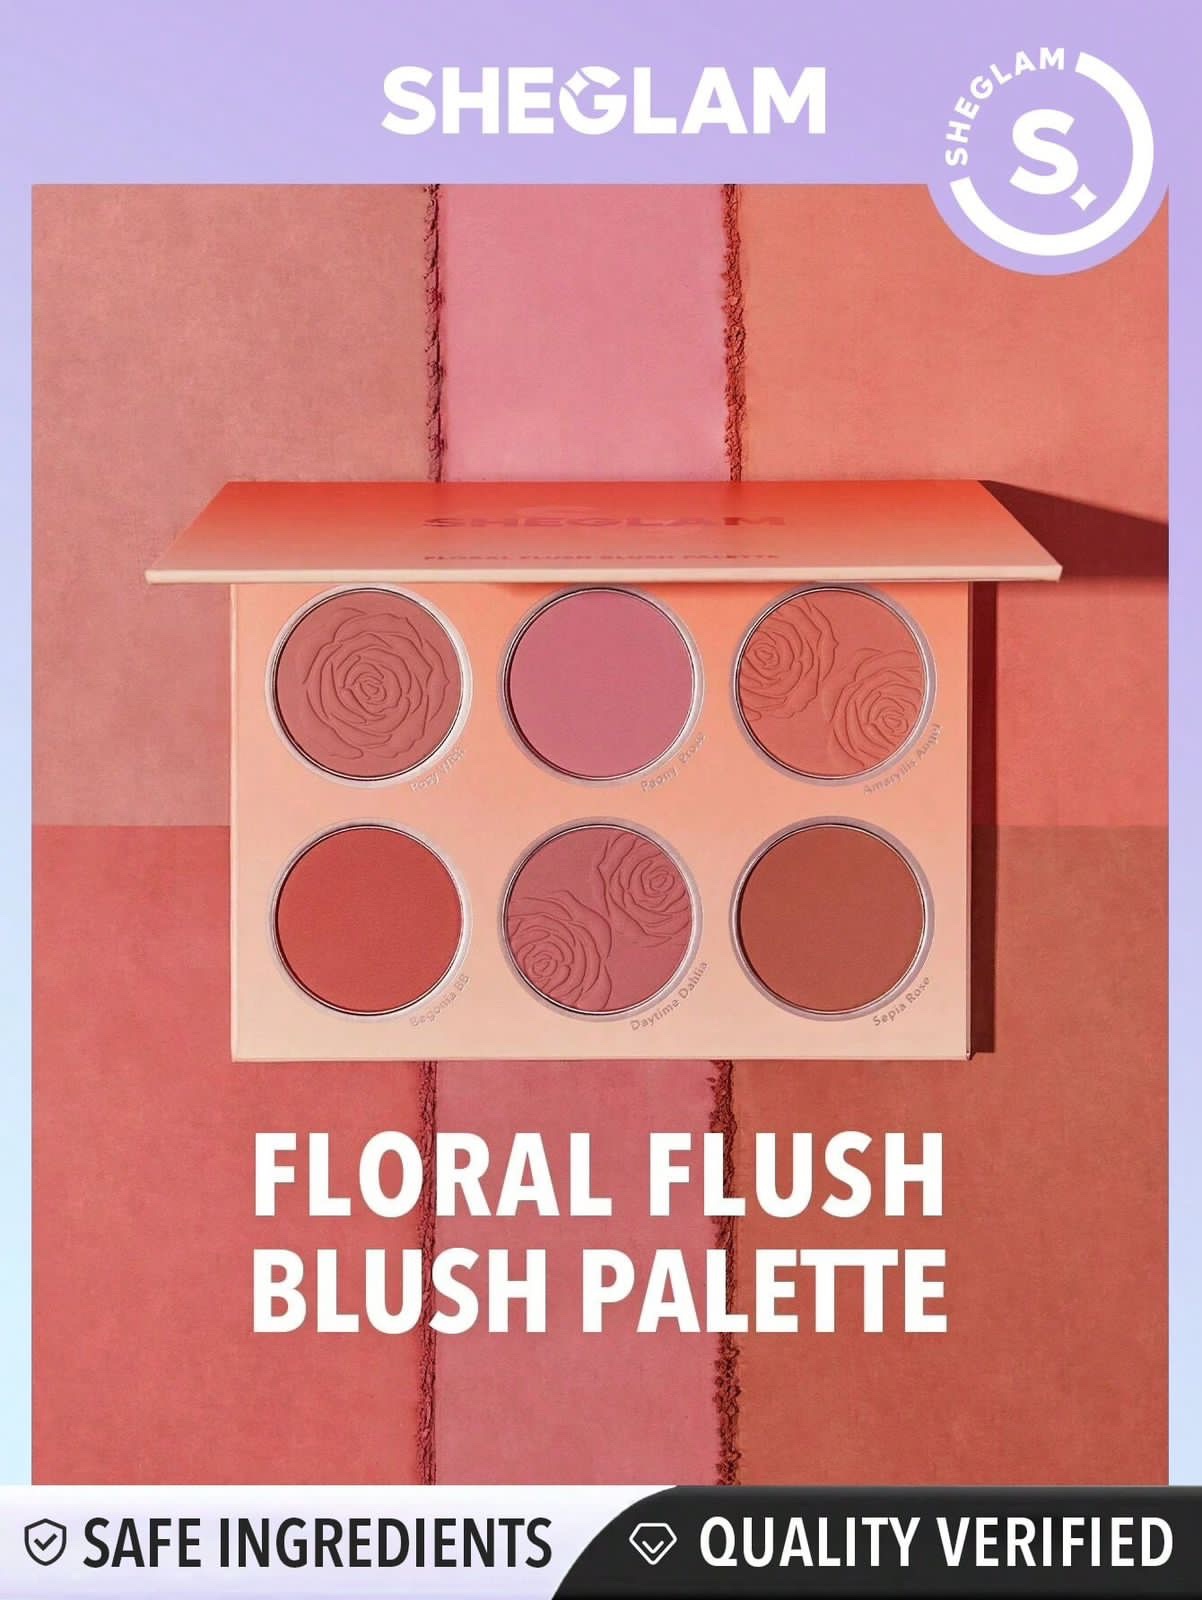 Paleta de Blush Floral Flush Blush Palette de Sheglam /Shein